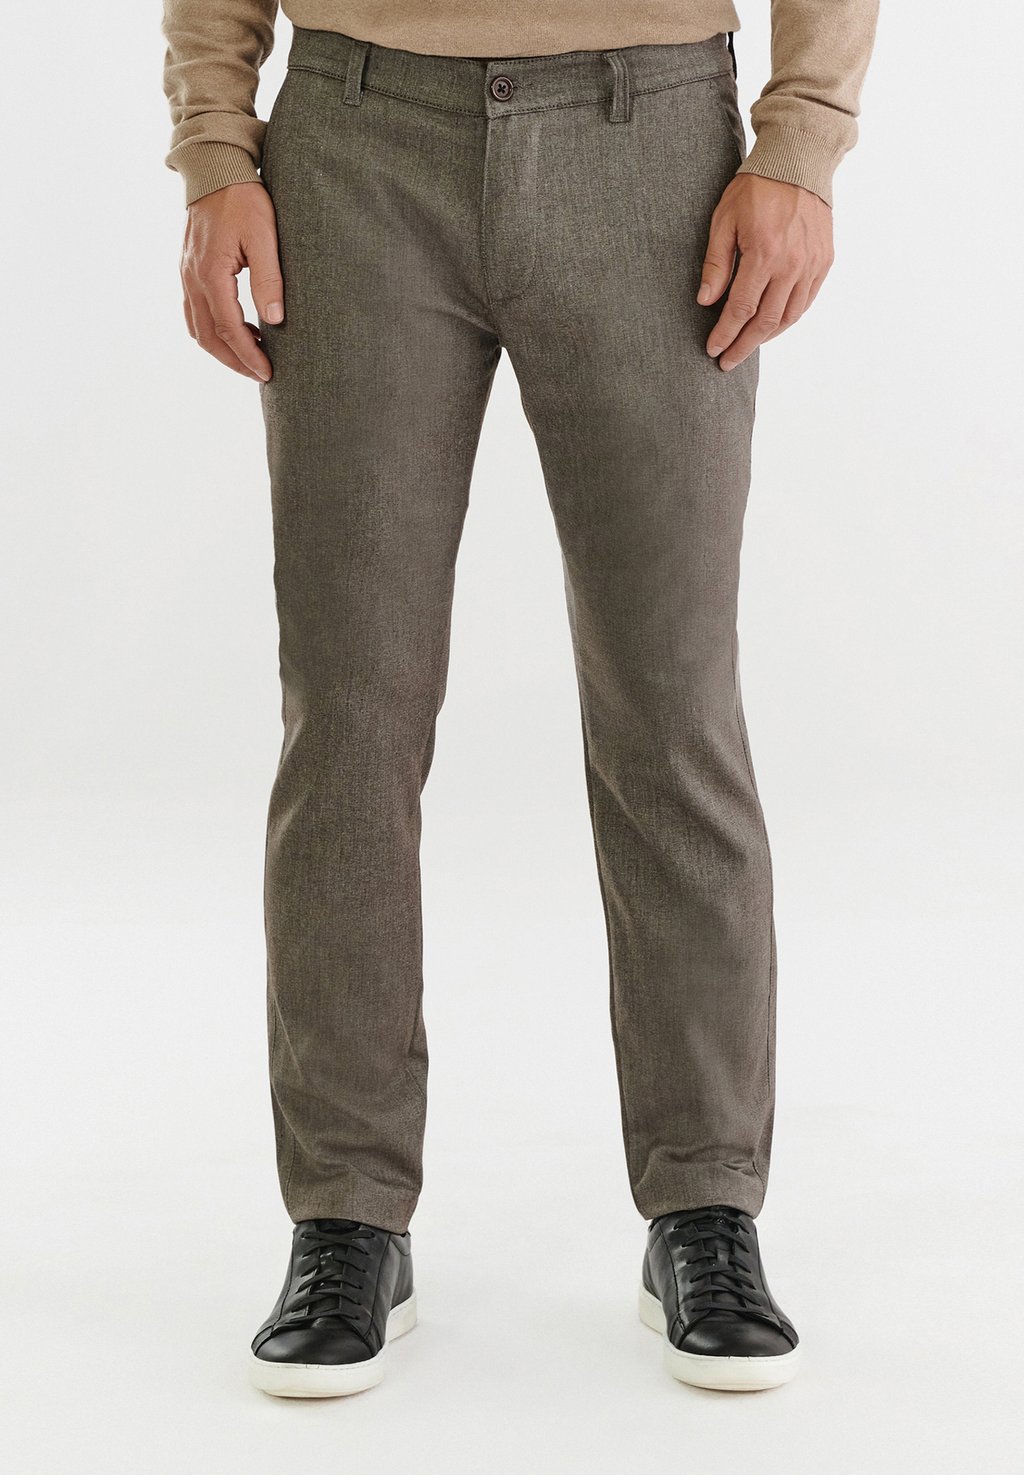 Тканевые брюки Pako Lorente, коричневый